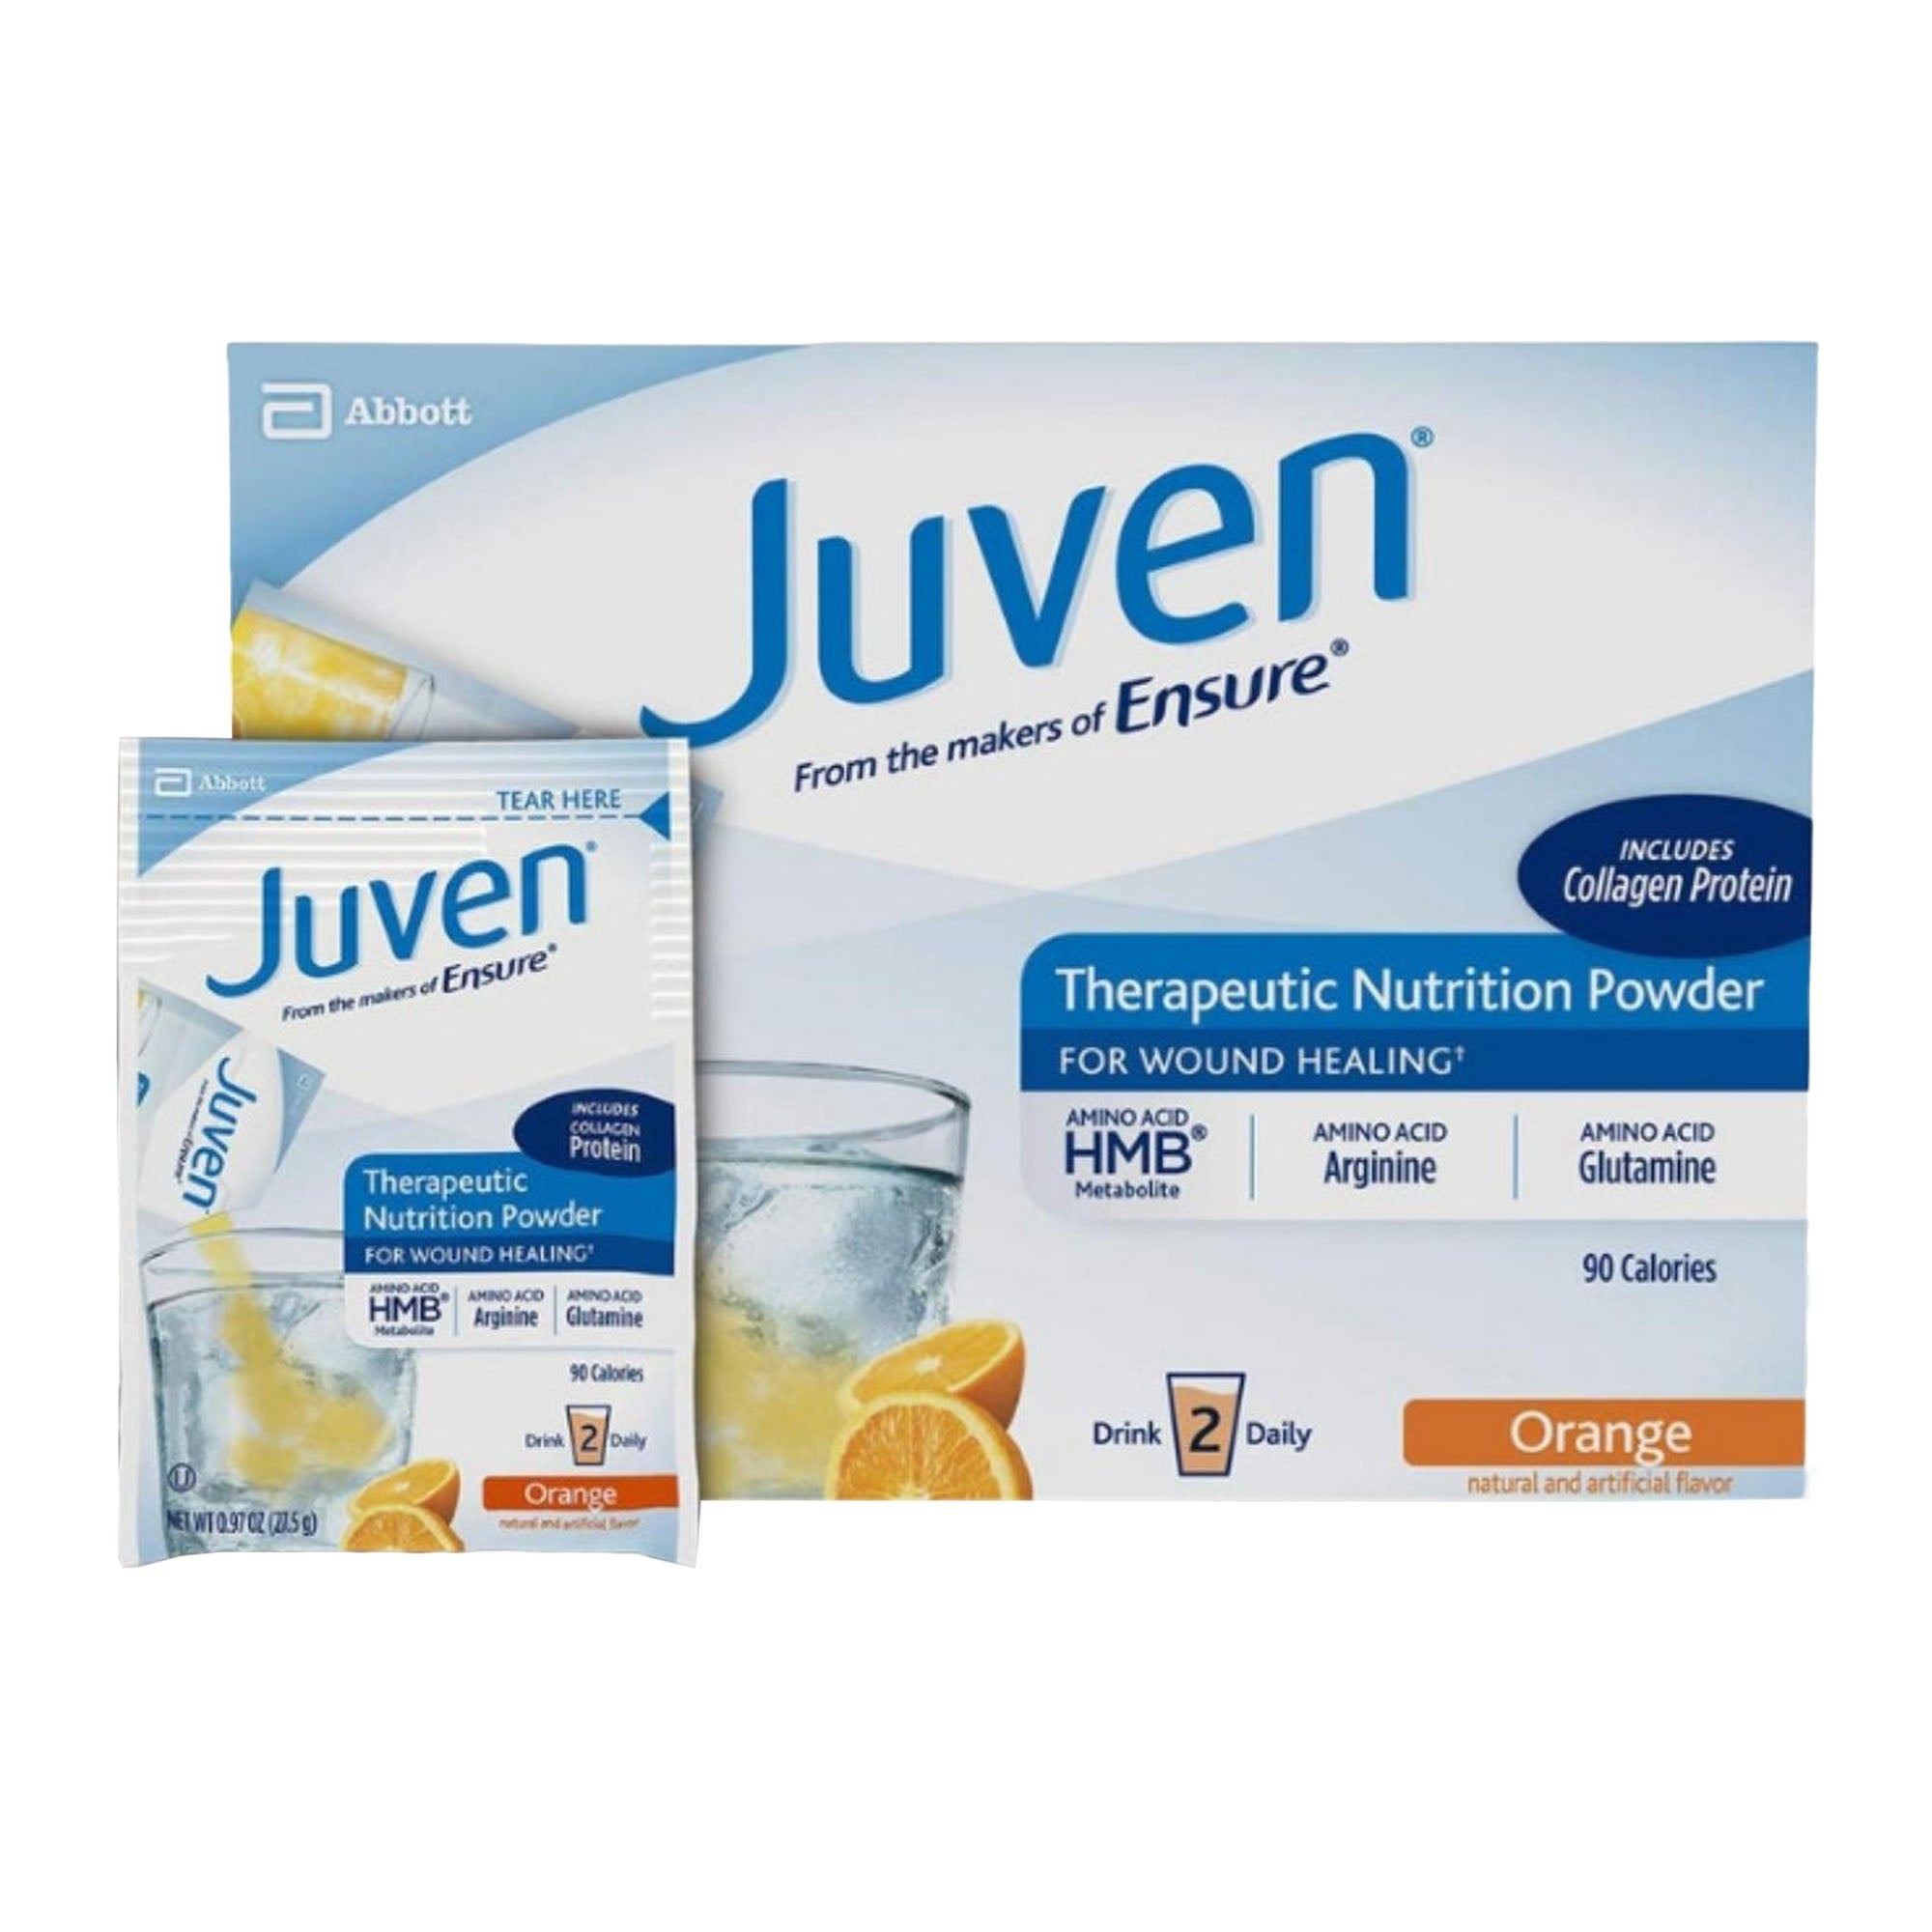 Juven Oral Supplement Orange Powder 0.97 oz. Individual Packet